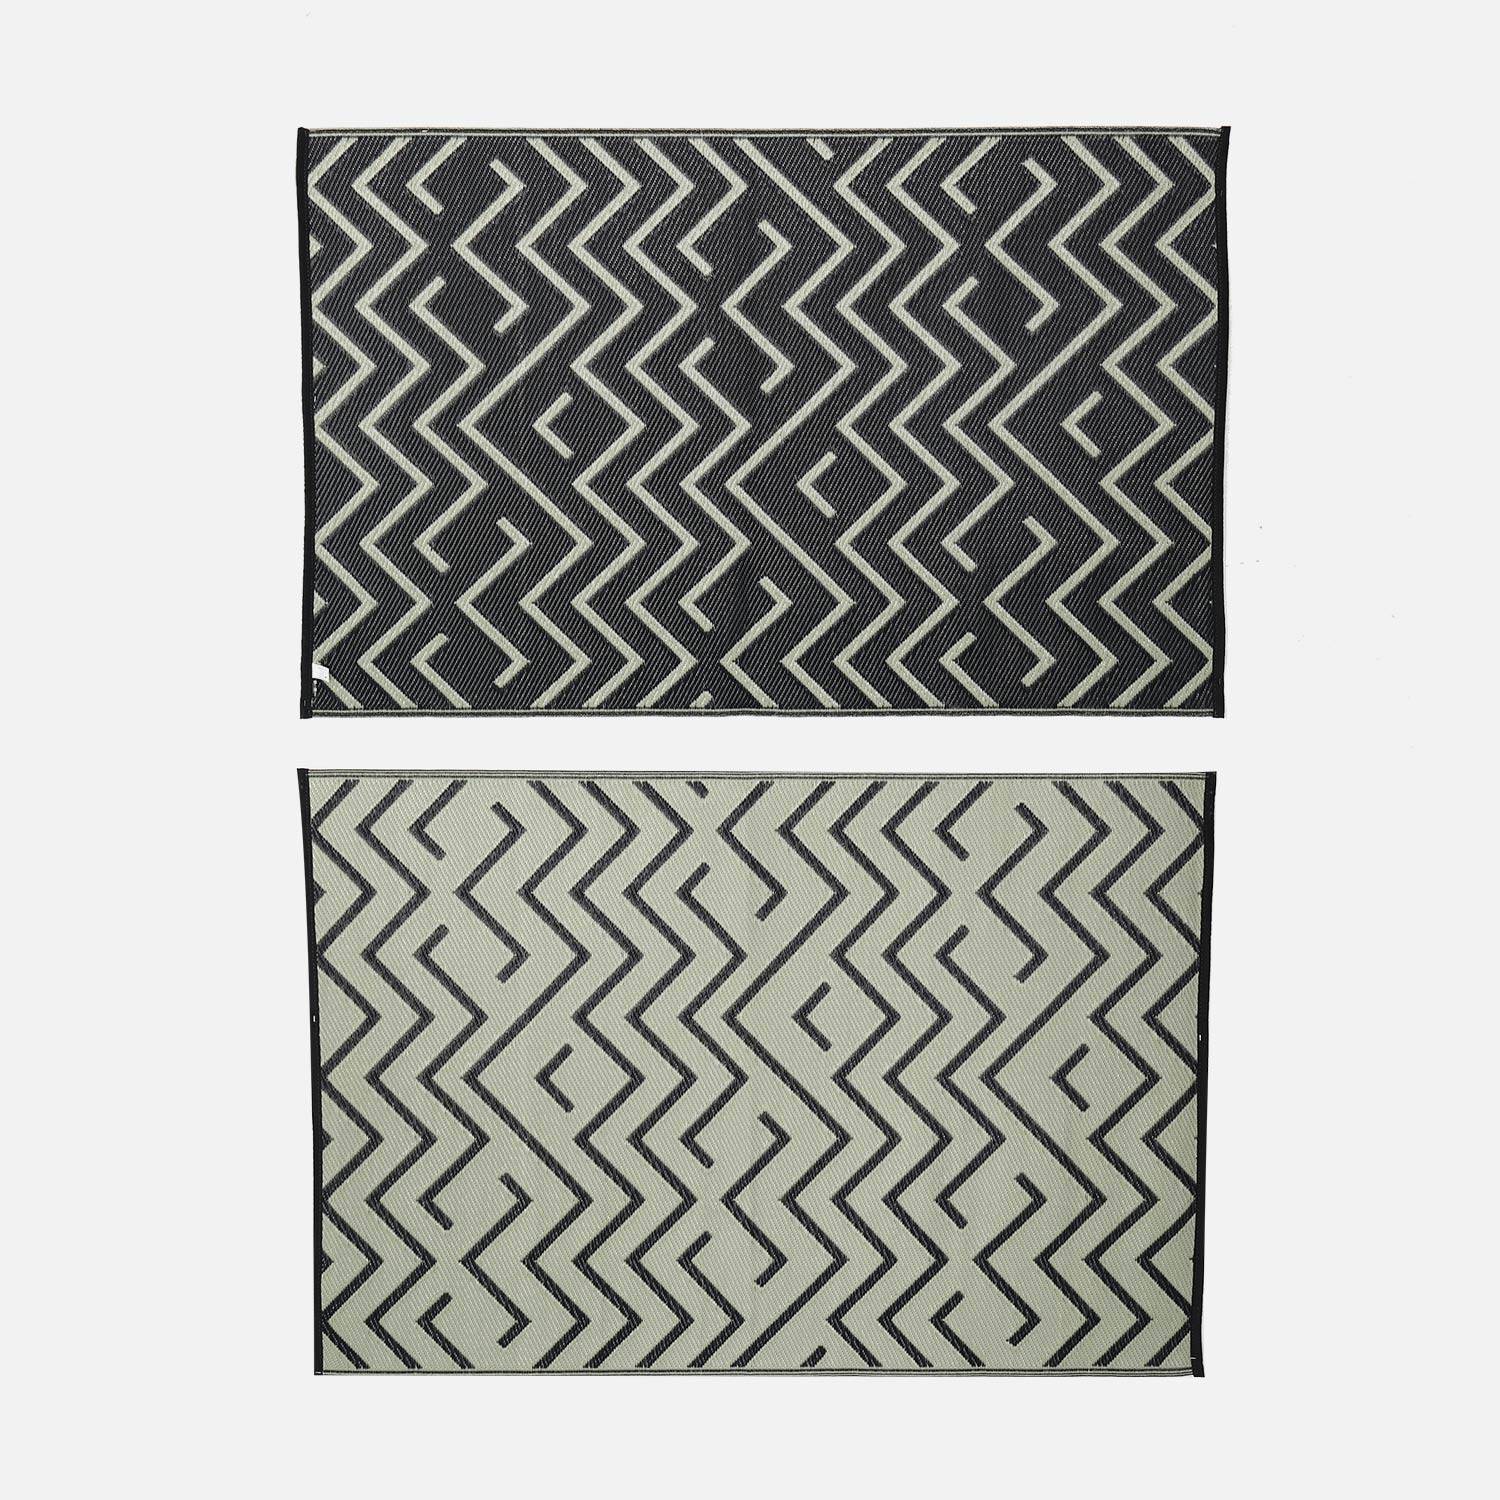 Tapete exterior 120x180cm SYDNEY - Rectangular, padrão de onda preto/ bege, quadriculado, reversível, interior/exterior Photo2